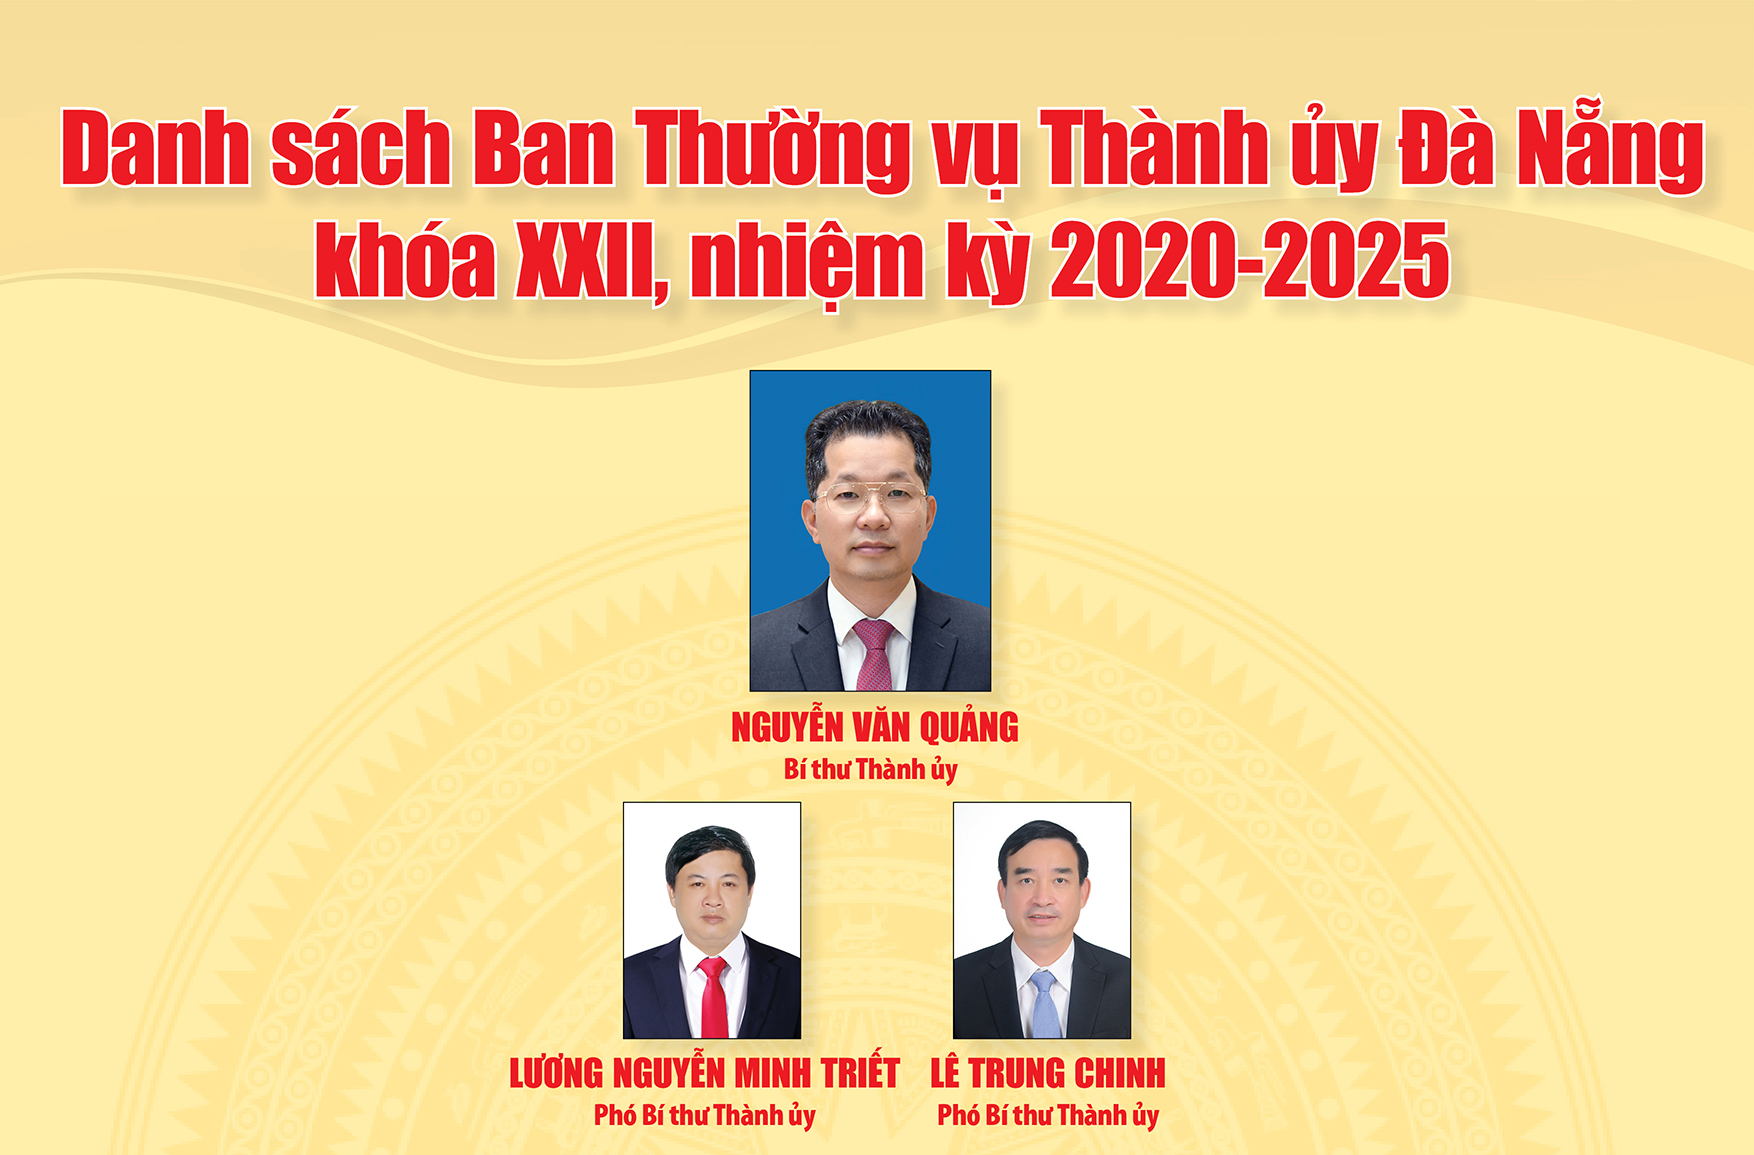 Ban Thường vụ Thành ủy Đà Nẵng khóa XXII, nhiệm kỳ 2020-2025